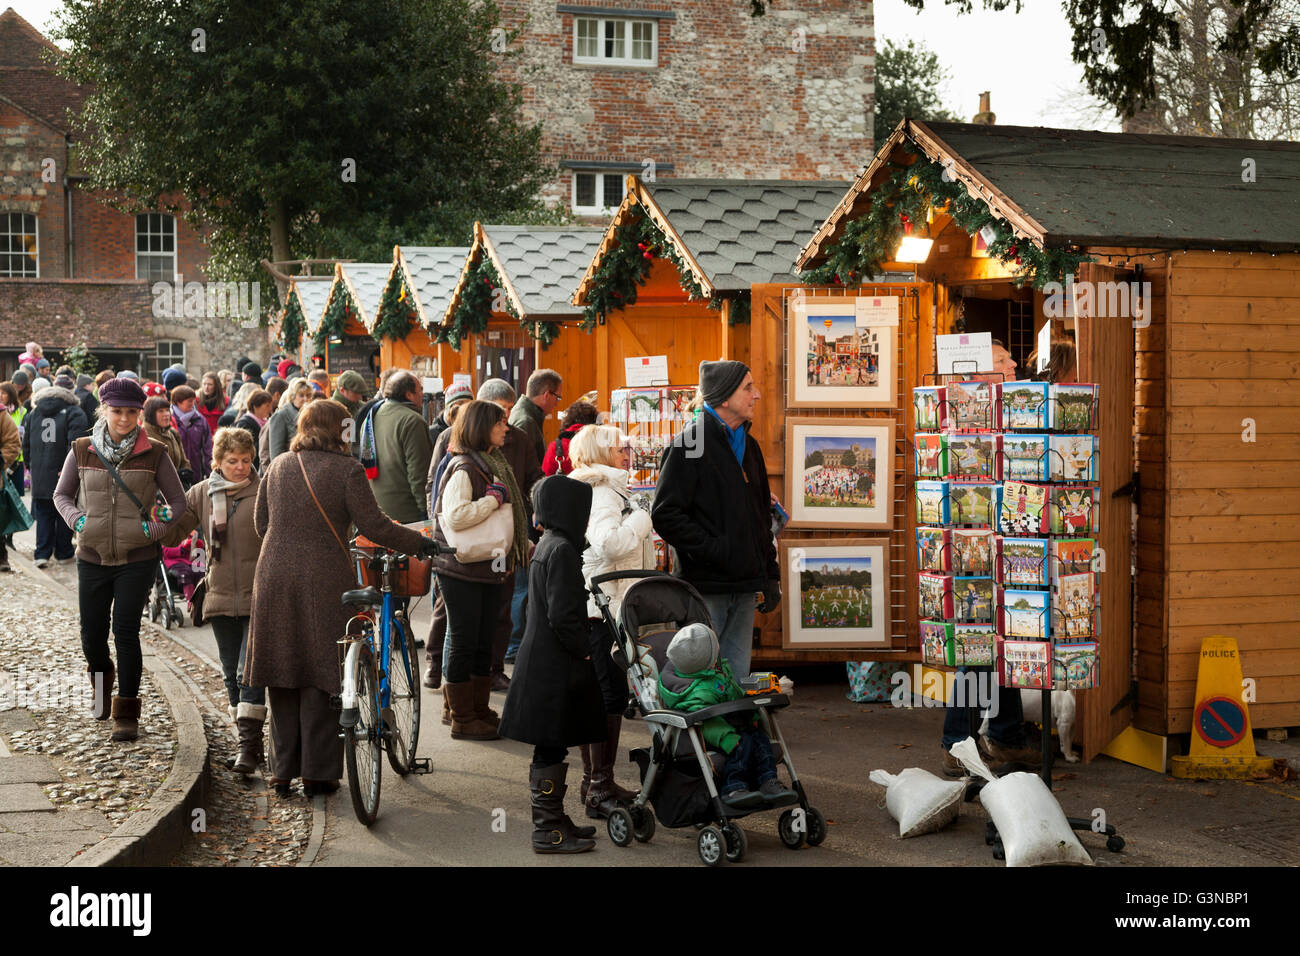 Massen viel Spaß beim Einkaufen auf Weihnachten Markt bu der Kathedrale von Winchester Stockfoto